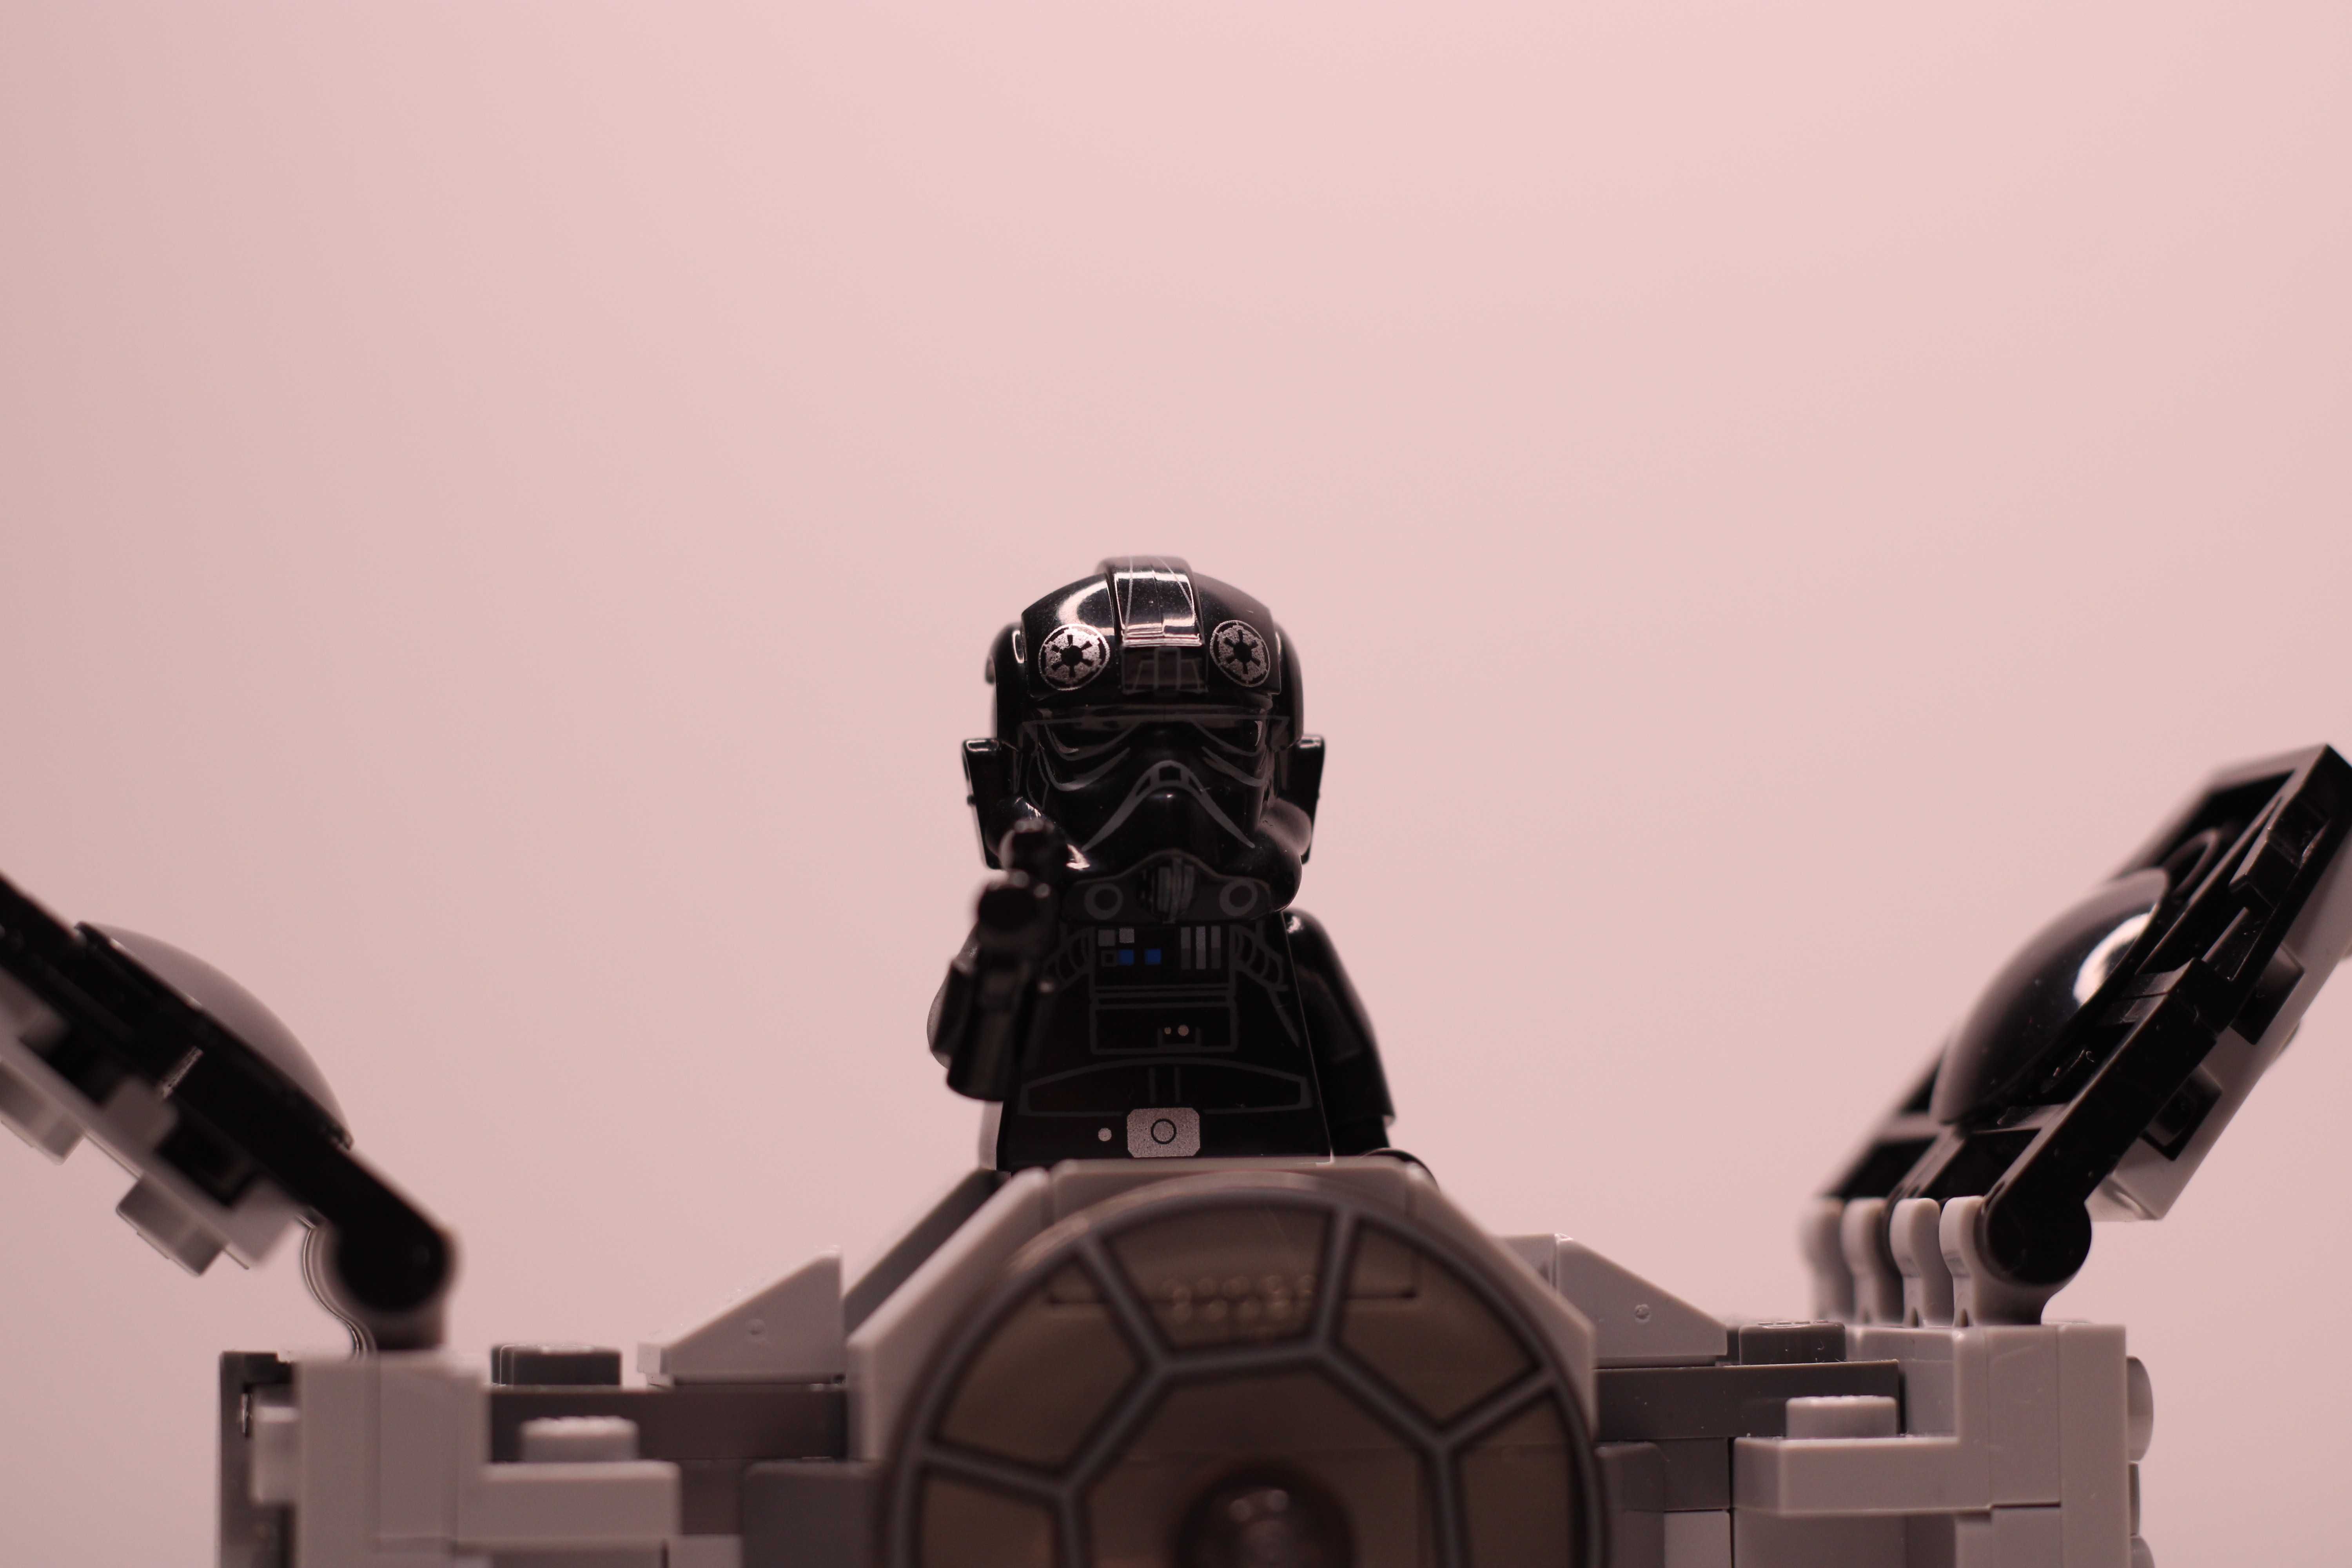 Zestaw LEGO® 75128 Star Wars - TIE Advanced Prototype używany